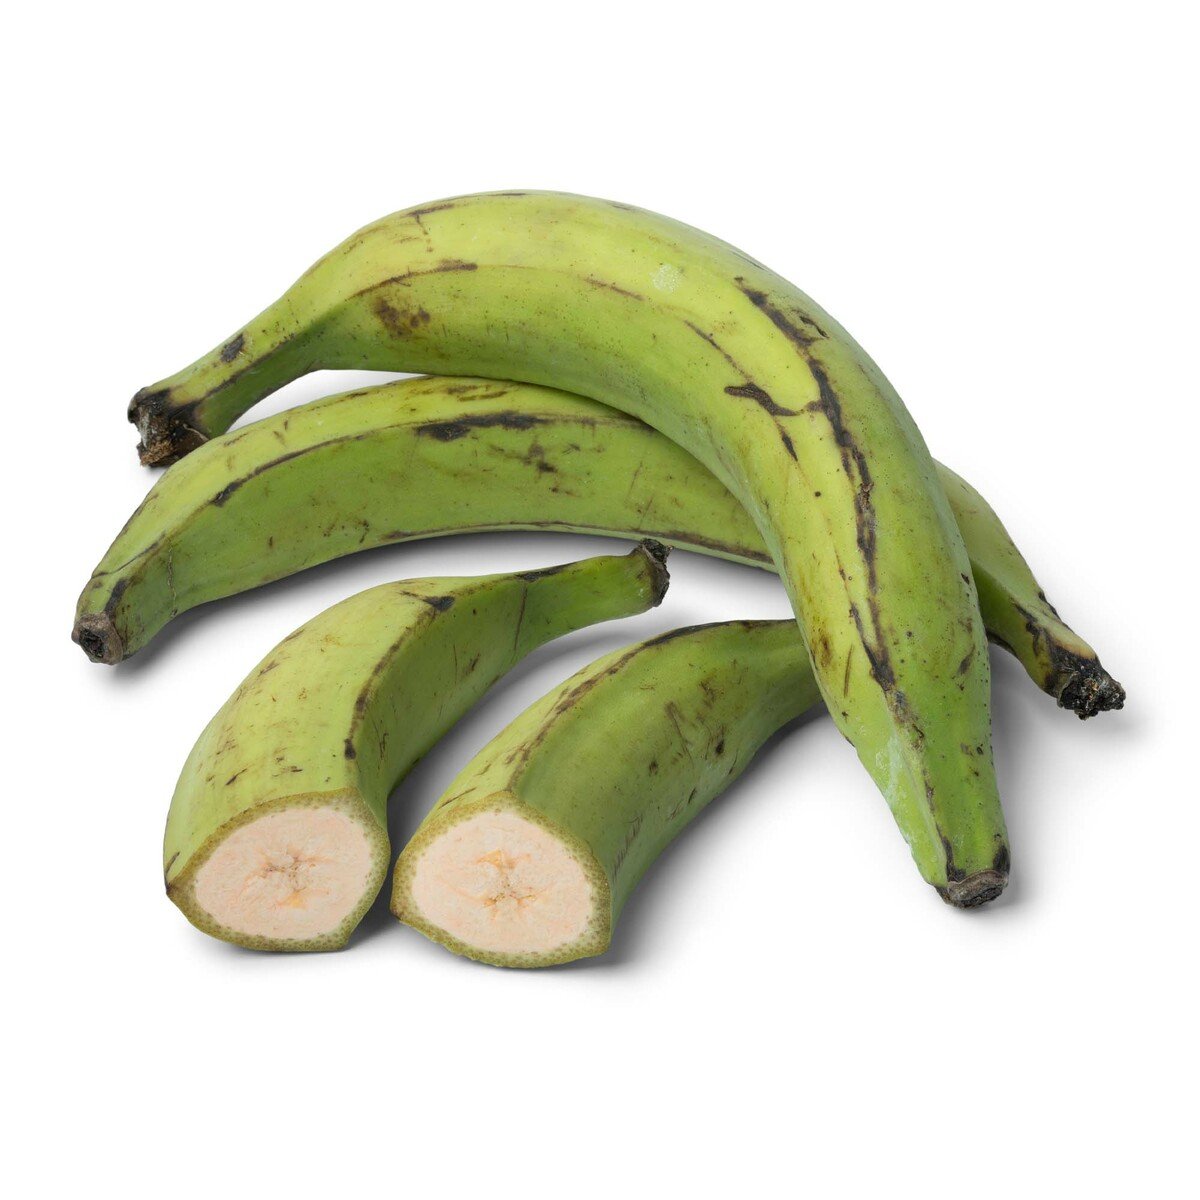 Banane Import 1Kg بانان مستورد 